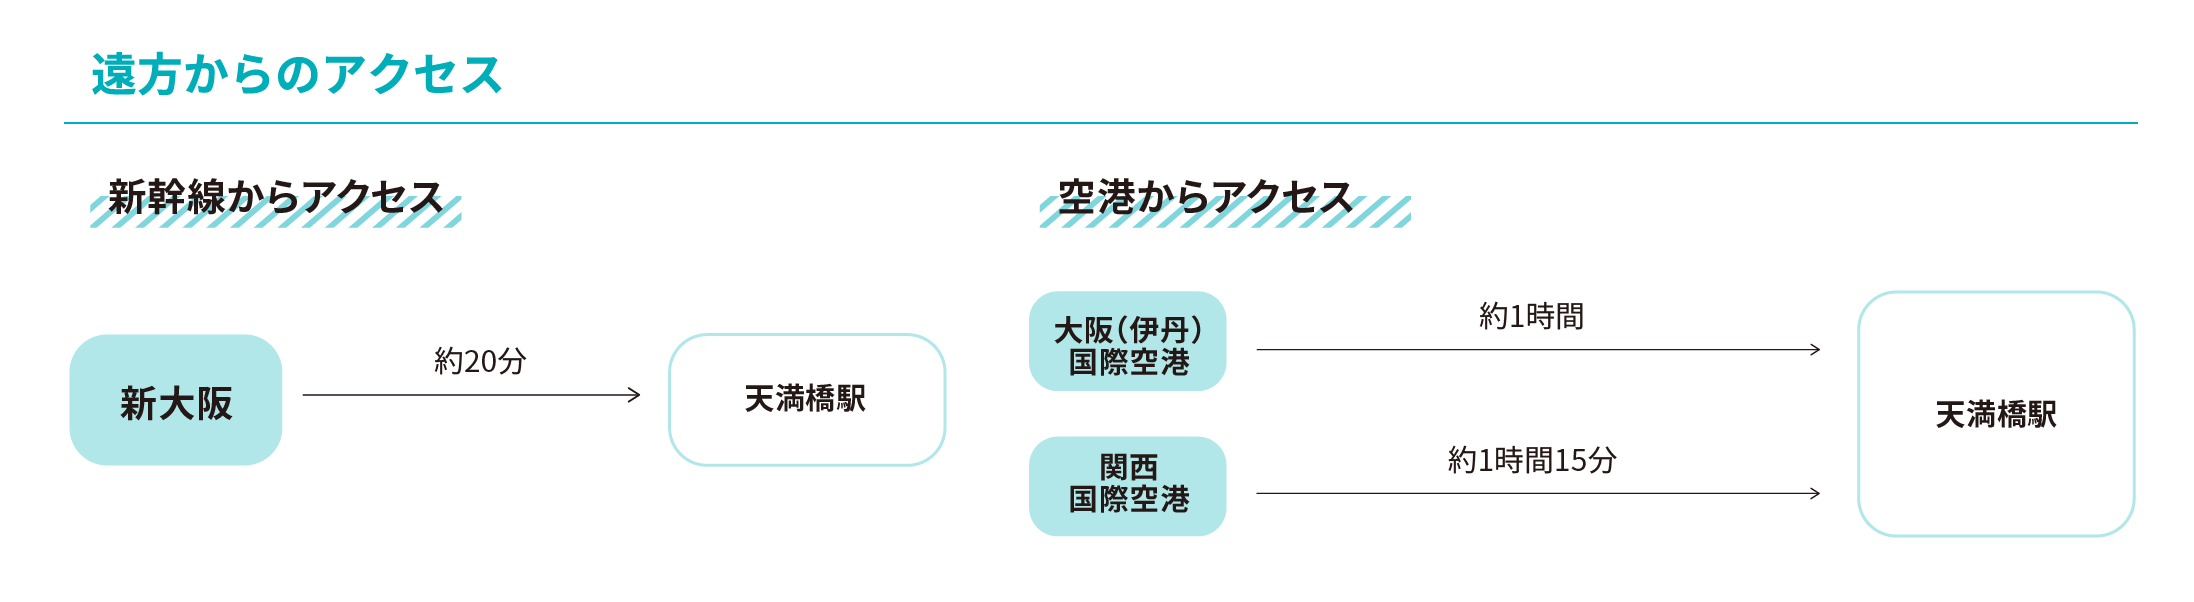 大阪キャンパスへのアクセス図